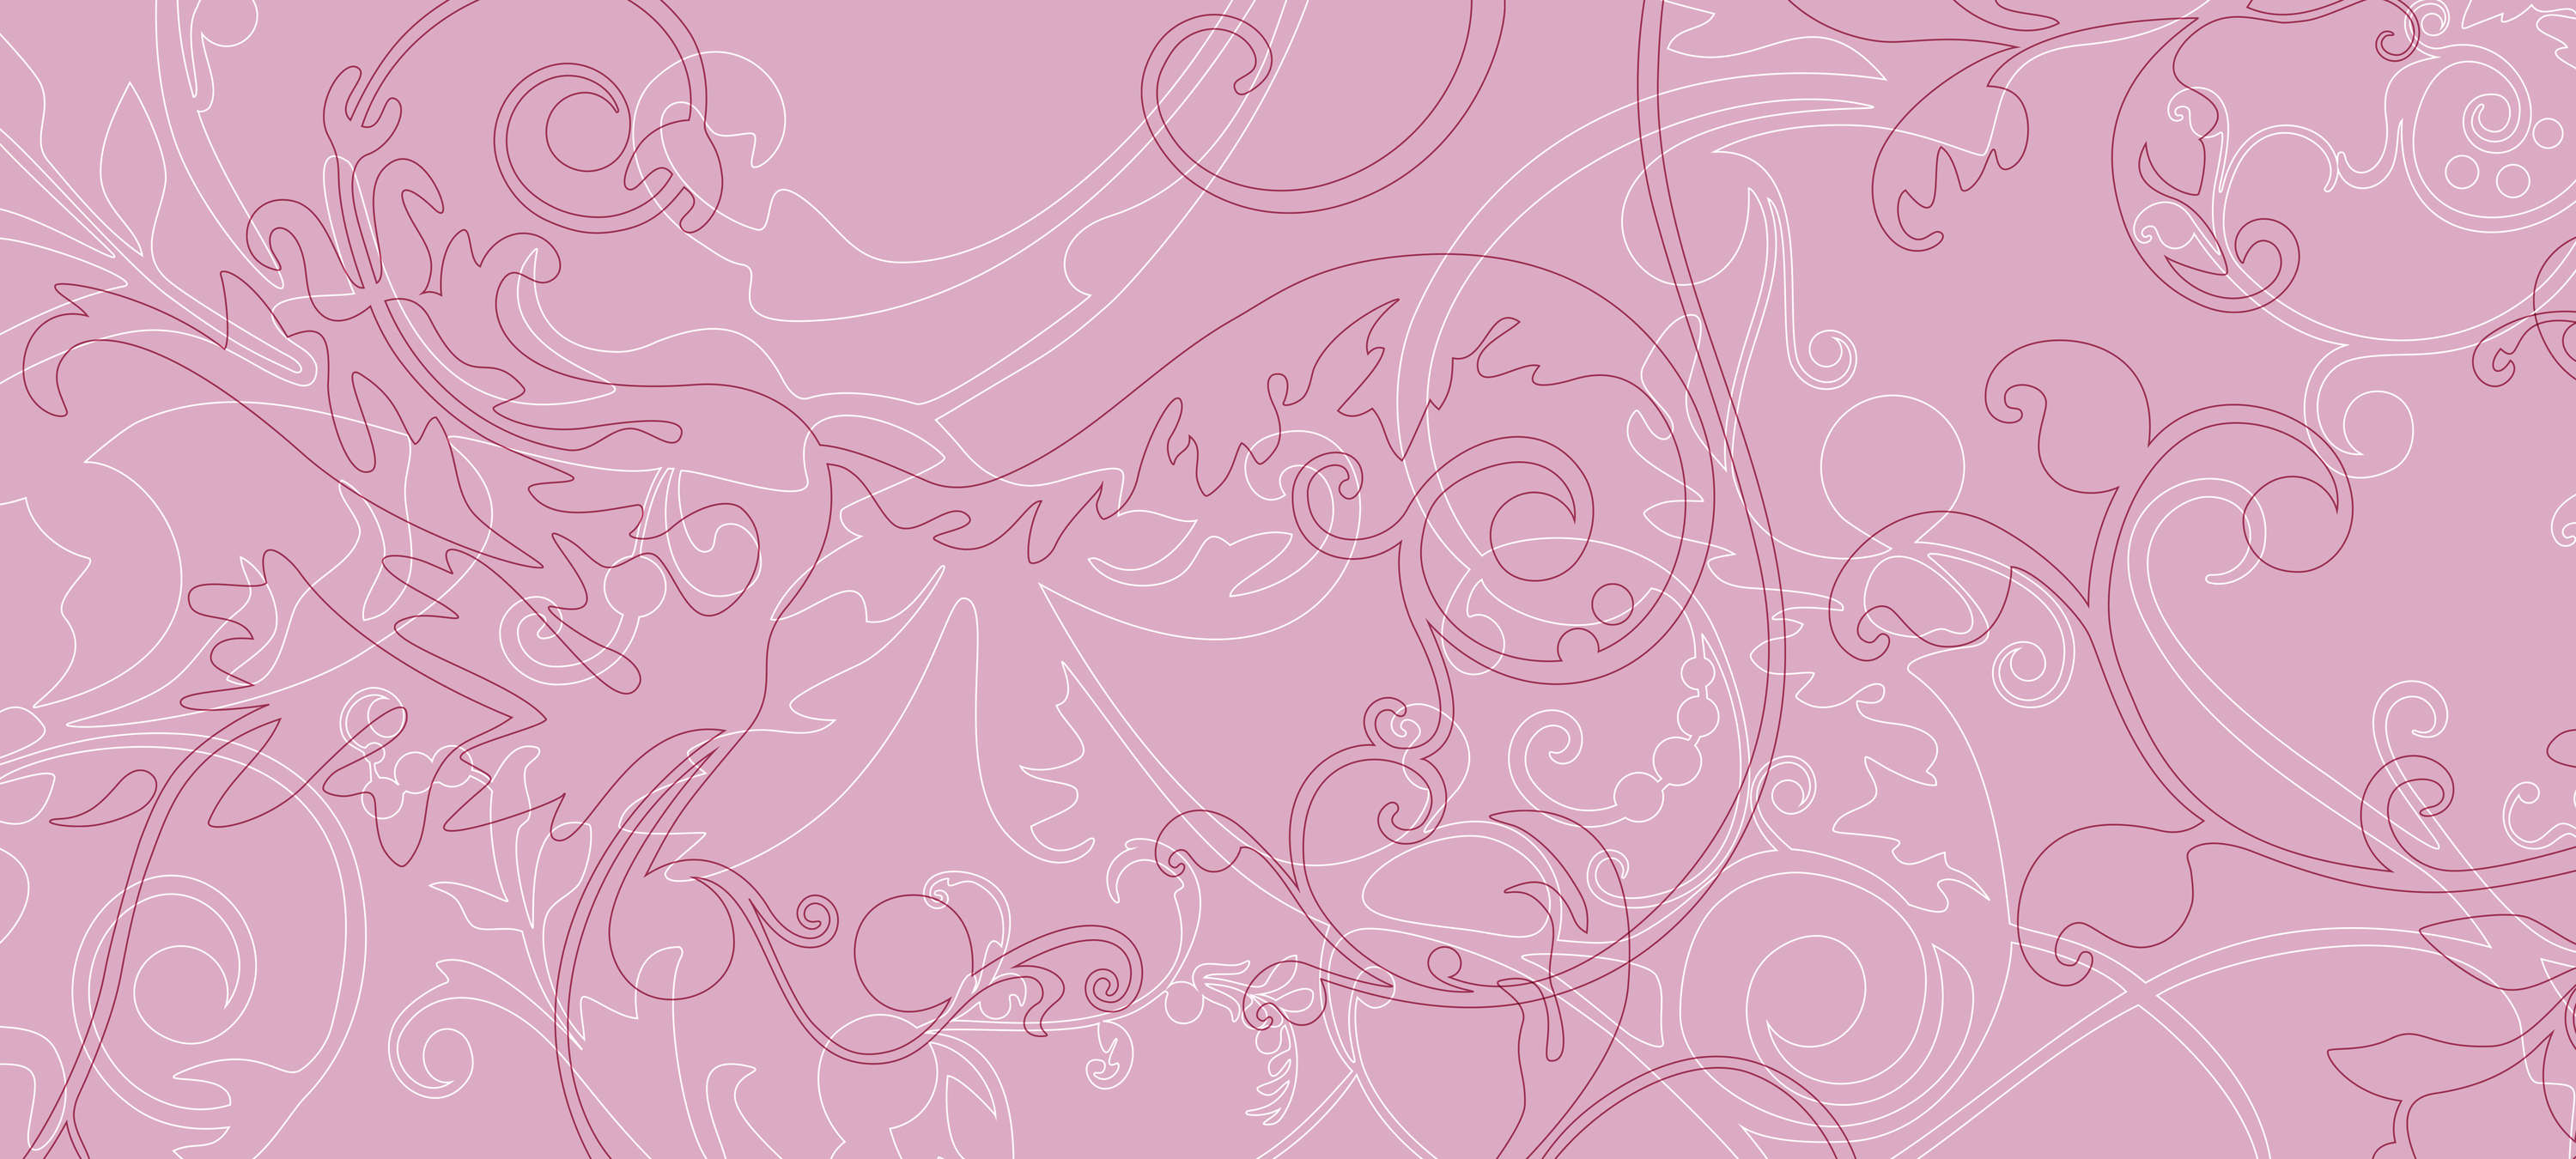             Adornos murales rosas, minimalistas y elegantes - Rosa, Blanco, Morado
        